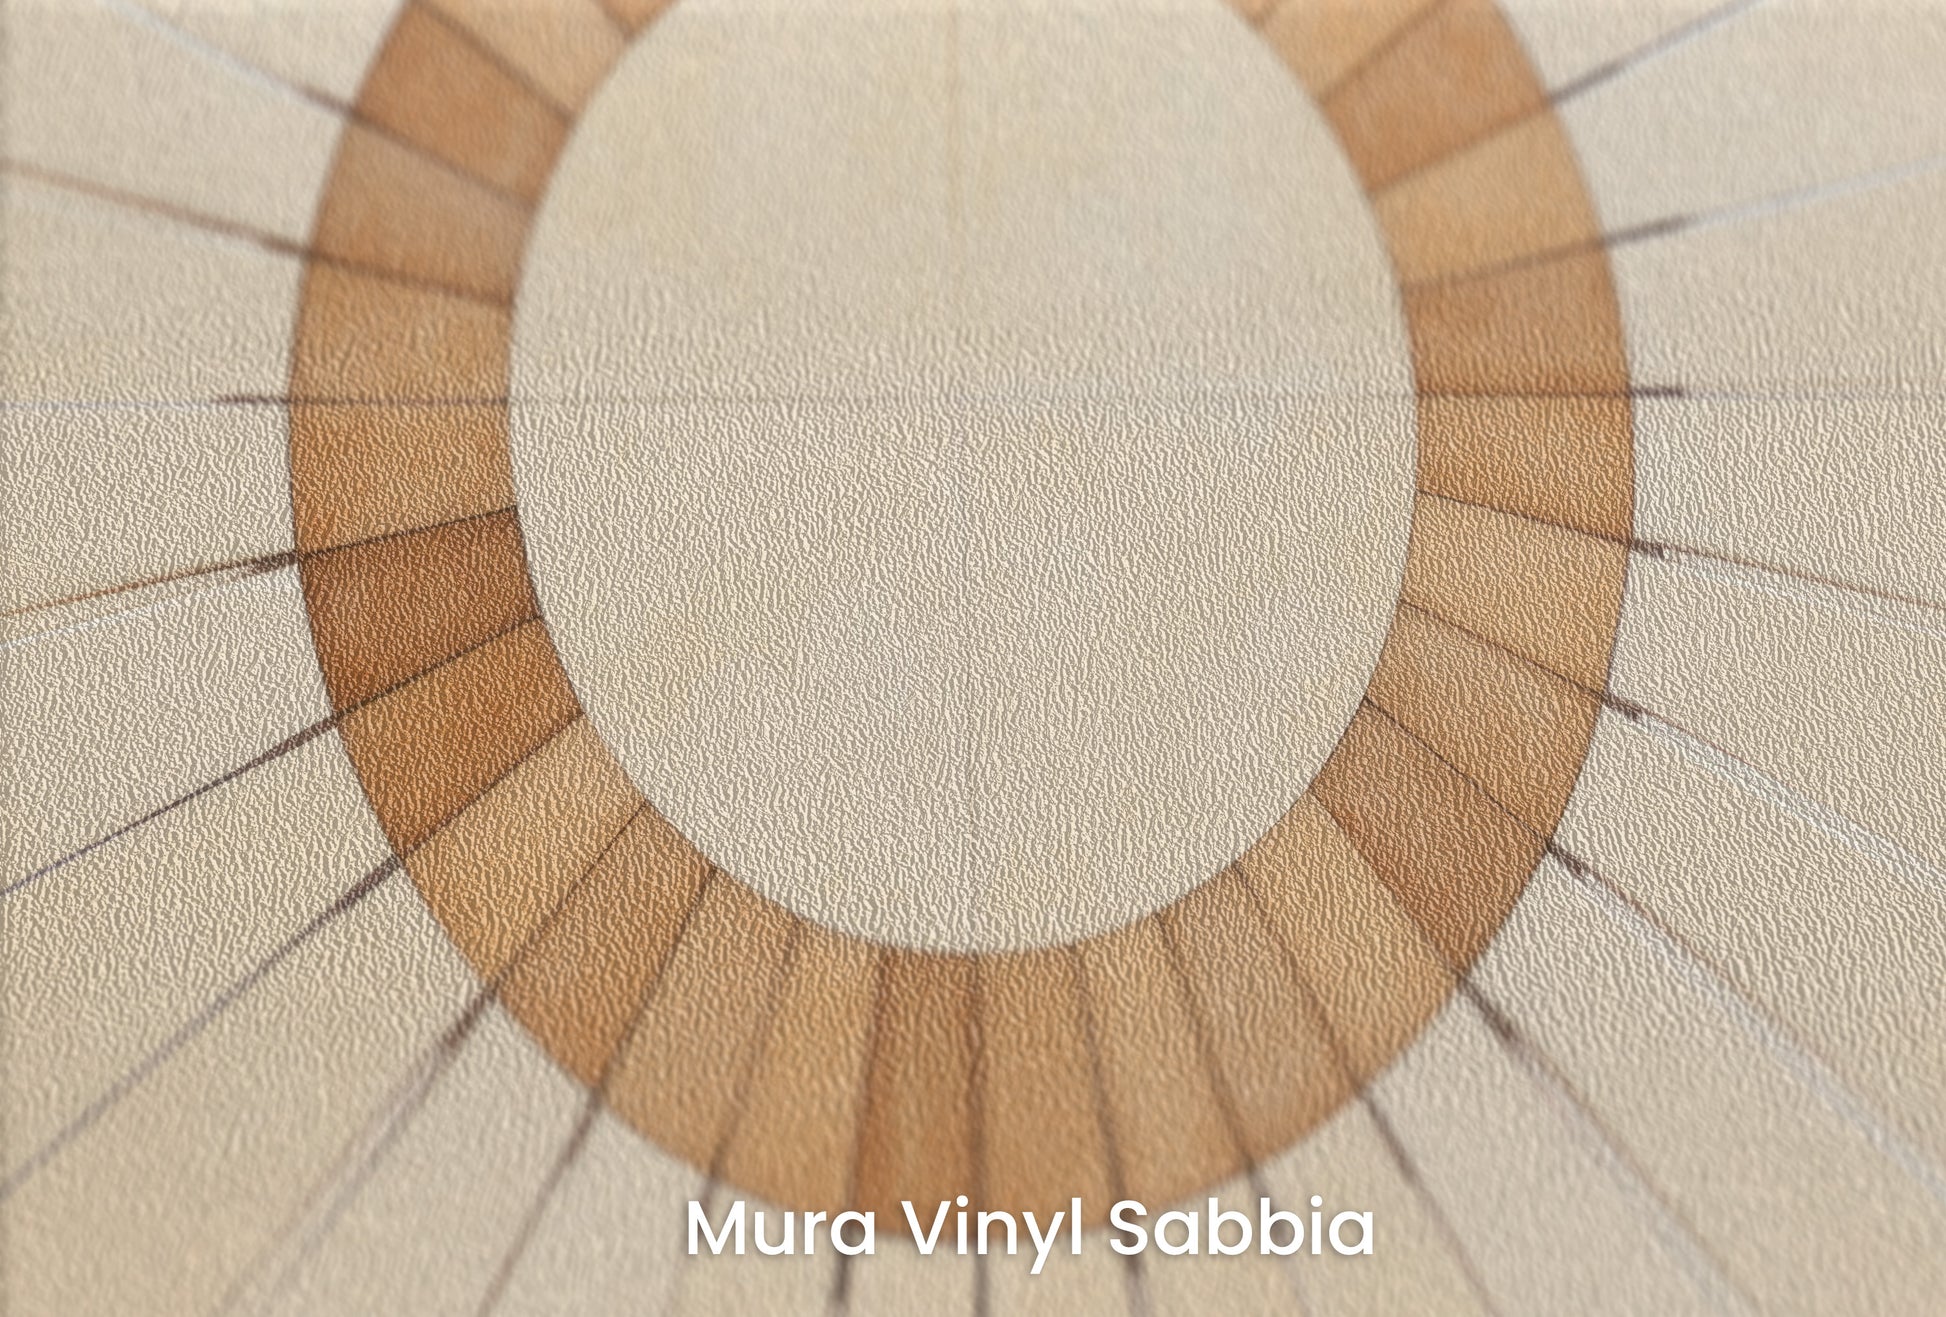 Zbliżenie na artystyczną fototapetę o nazwie SUNBURST OVAL MOSAIC na podłożu Mura Vinyl Sabbia struktura grubego ziarna piasku.